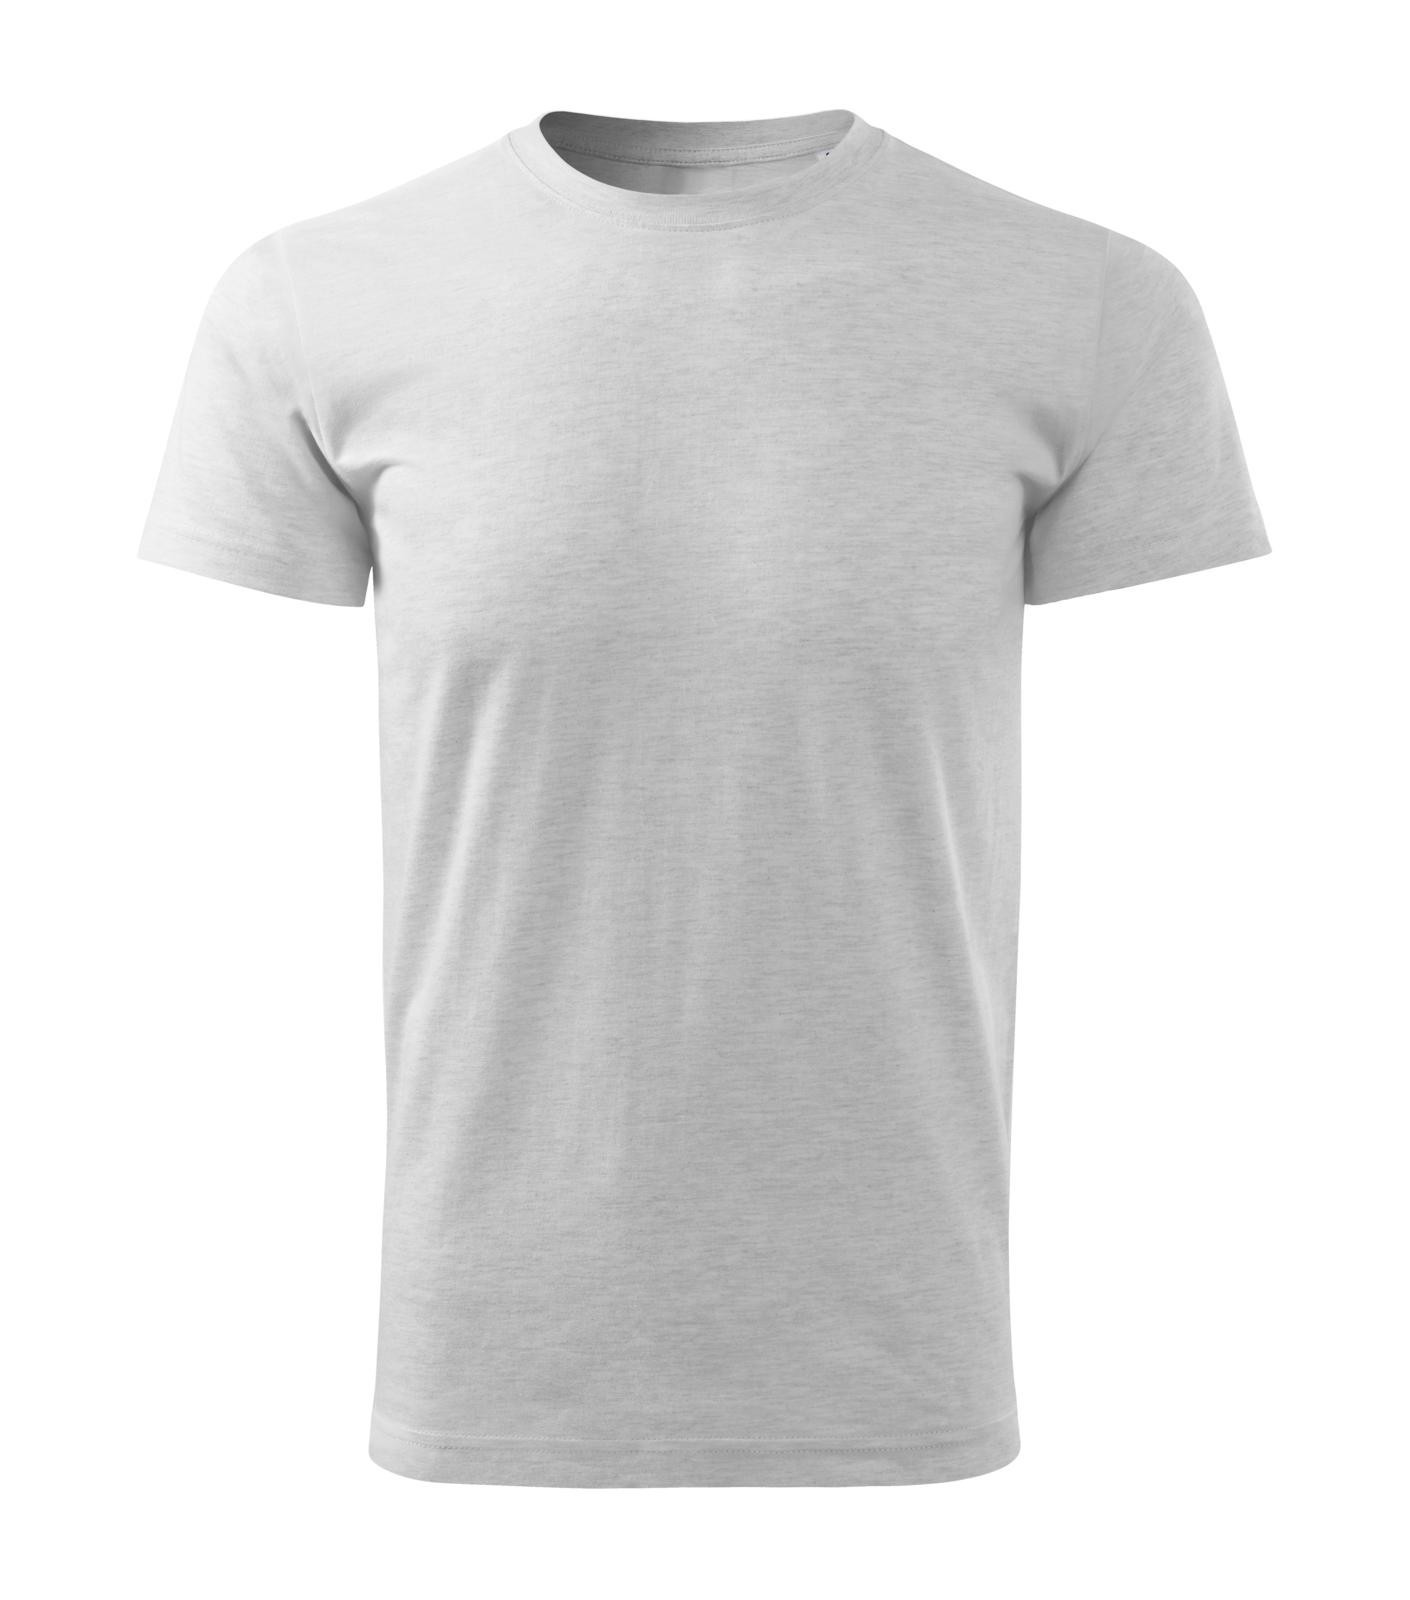 Pánske tričko Malfini Basic Free F29 - veľkosť: XL, farba: svetlosivý melír